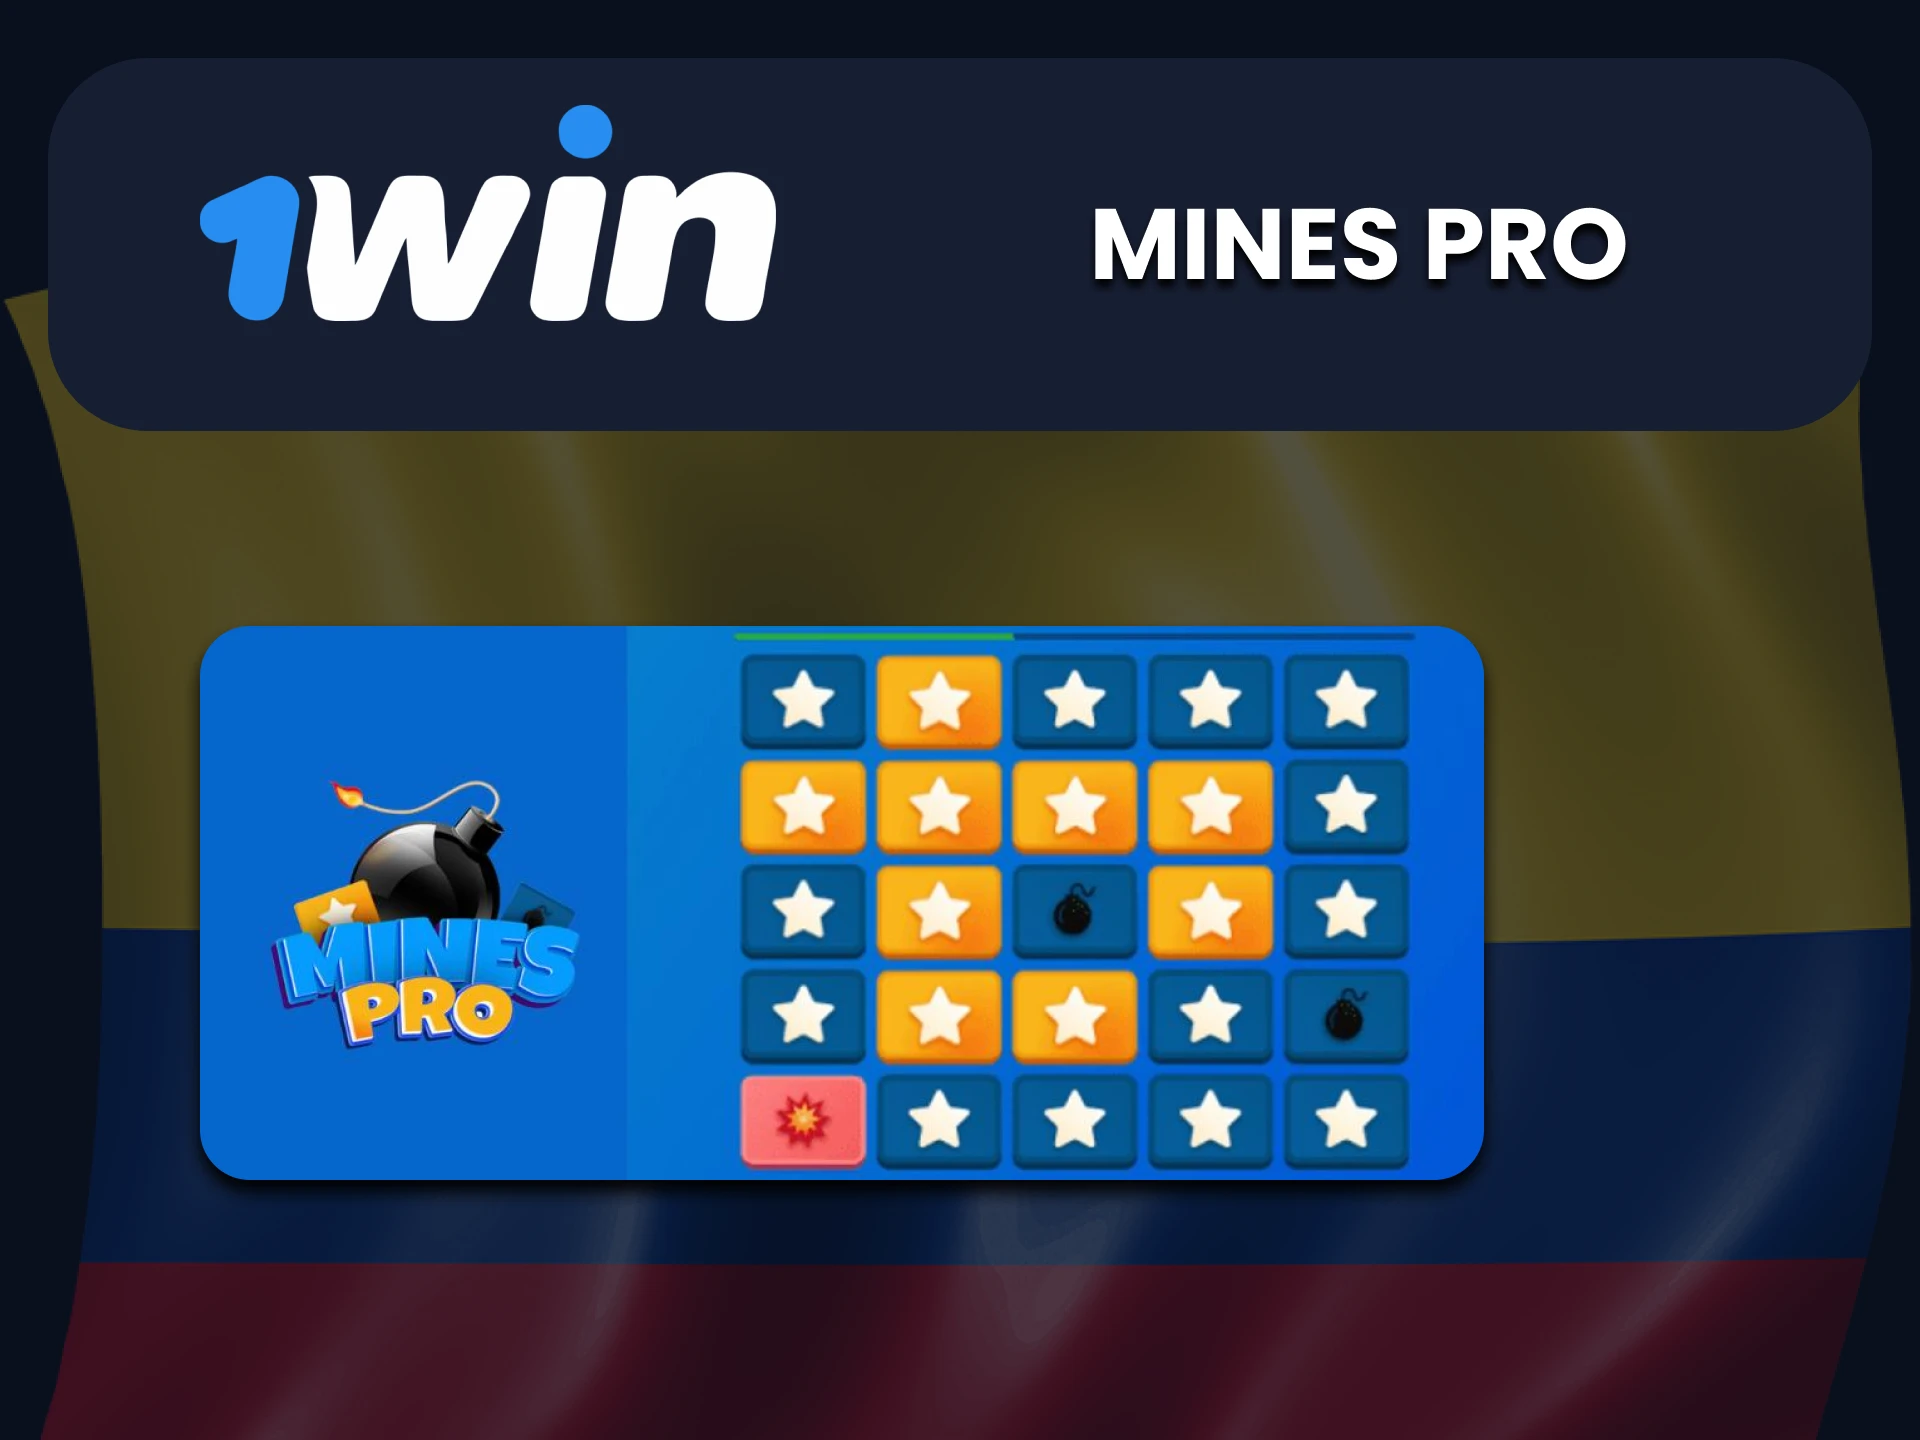 Elija Mines Pro para juegos en 1Win.